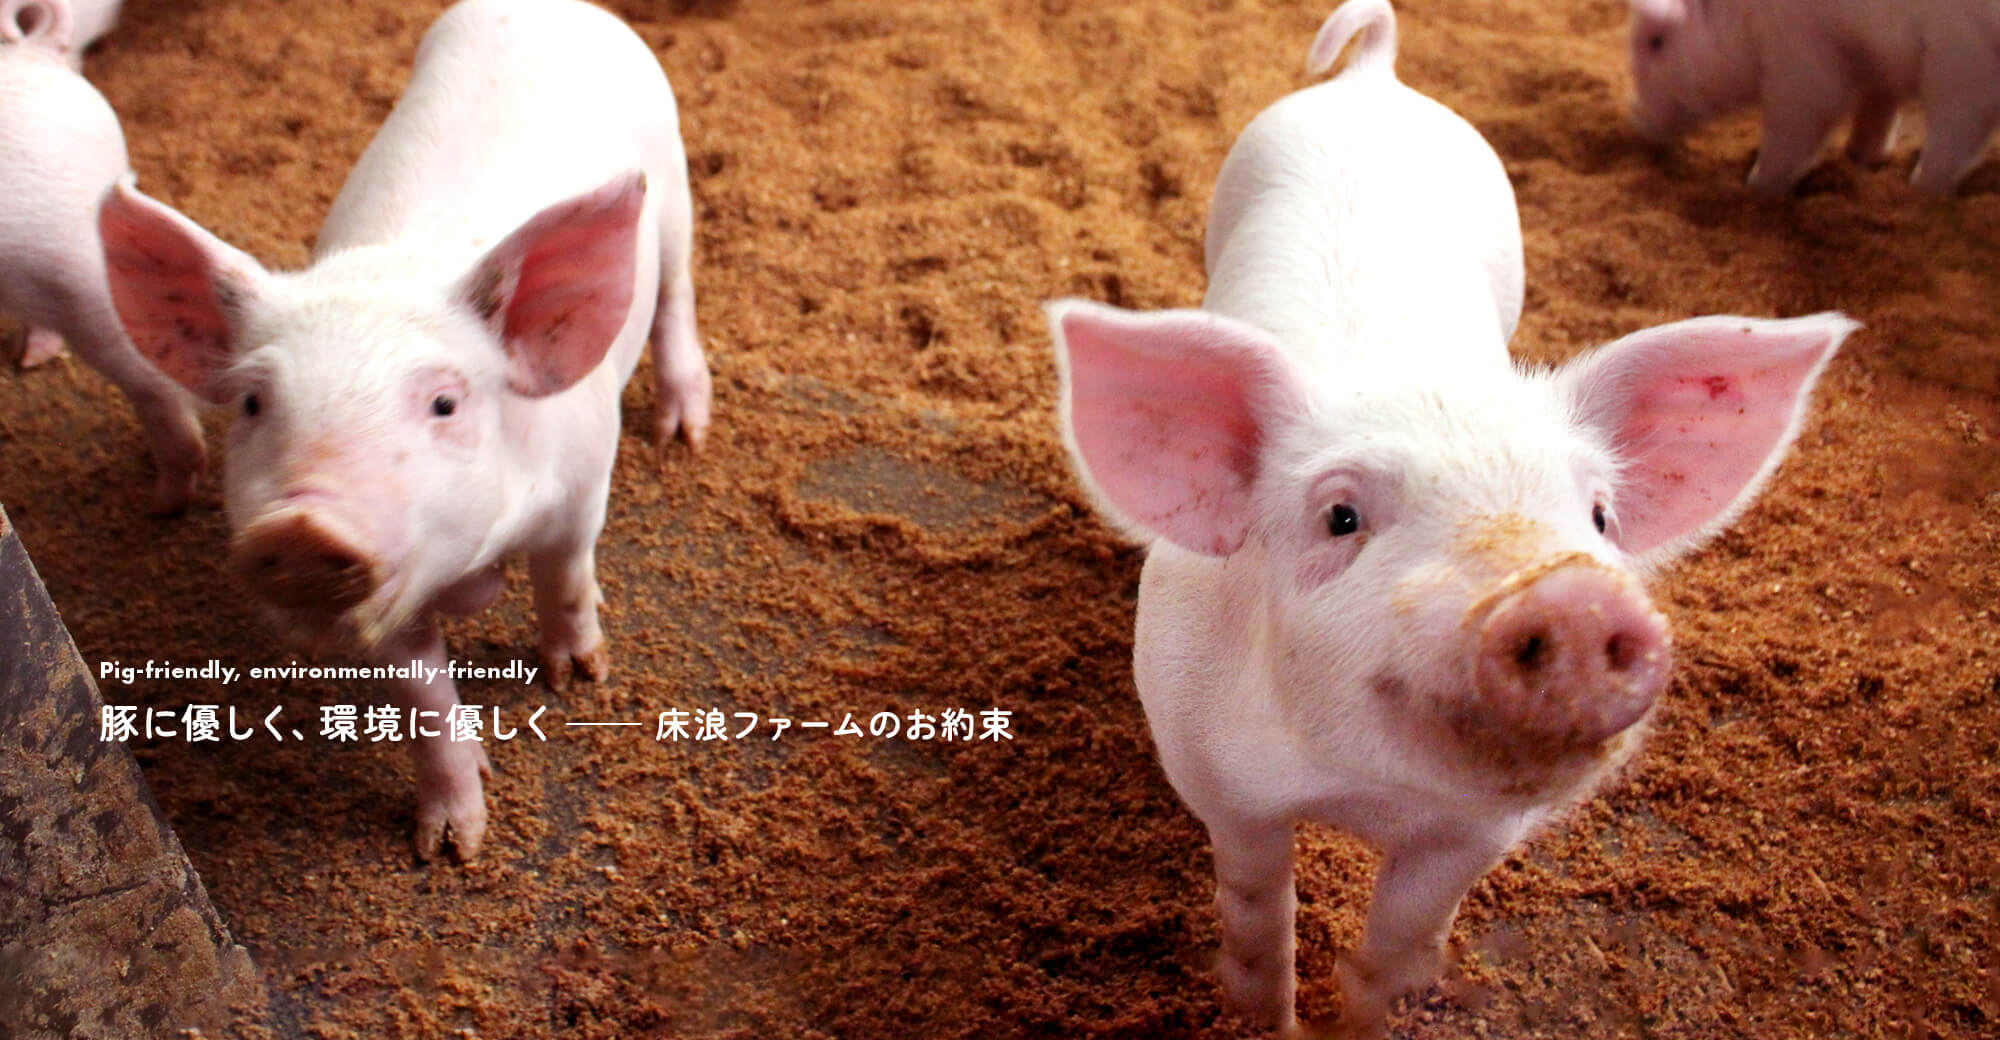 豚に優しく、環境に優しく　—床浪ファームのお約束